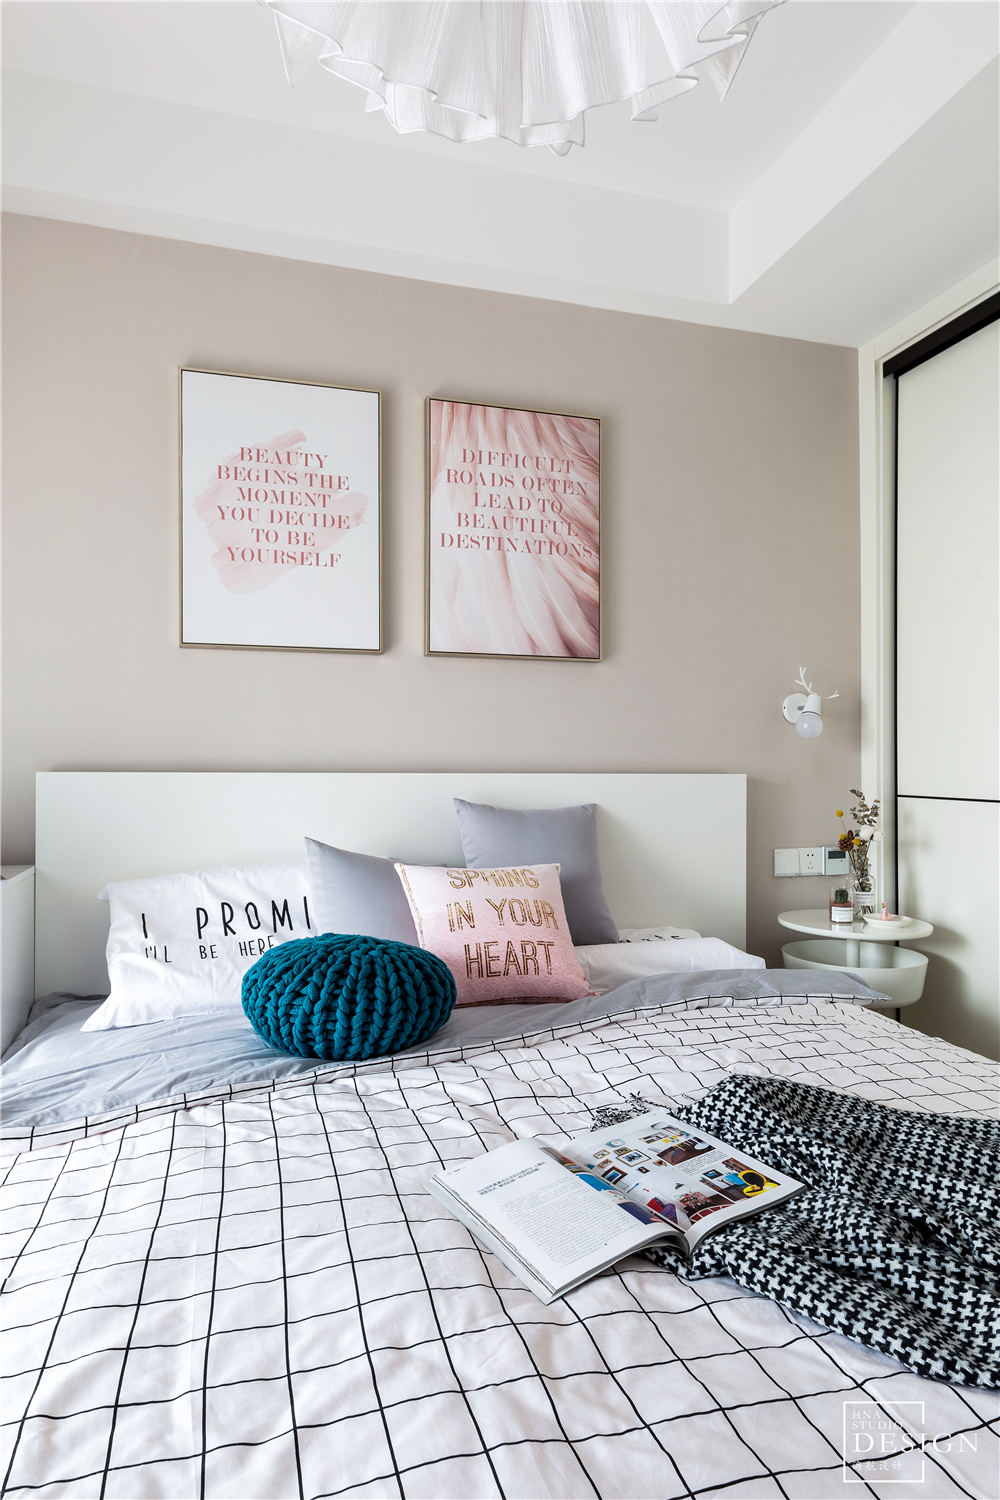 卧室2装修效果图粉色浪漫北欧风卧室背景画图北欧风卧室设计图片赏析